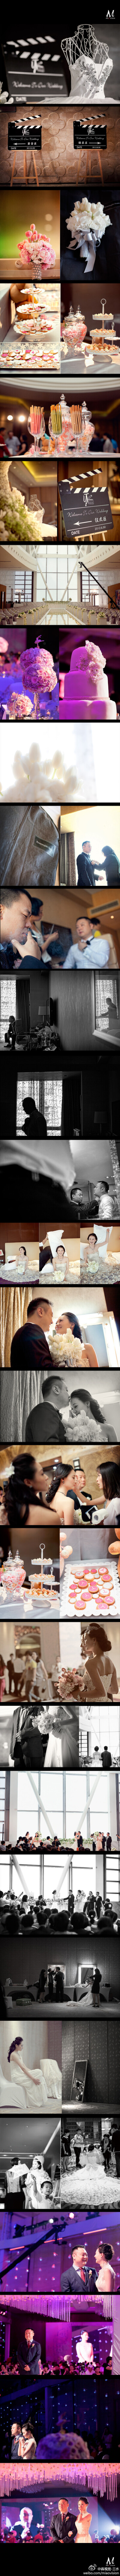 滕华涛先生和周圆圆小姐的婚礼，没有秀，没有媒体，看不到闪光灯的频闪，甚至看不到太多来宾在拍摄，大家都沉浸在这样一场默默温情的婚礼中，真心的祝福。（分享：@淼视觉婚礼影像）